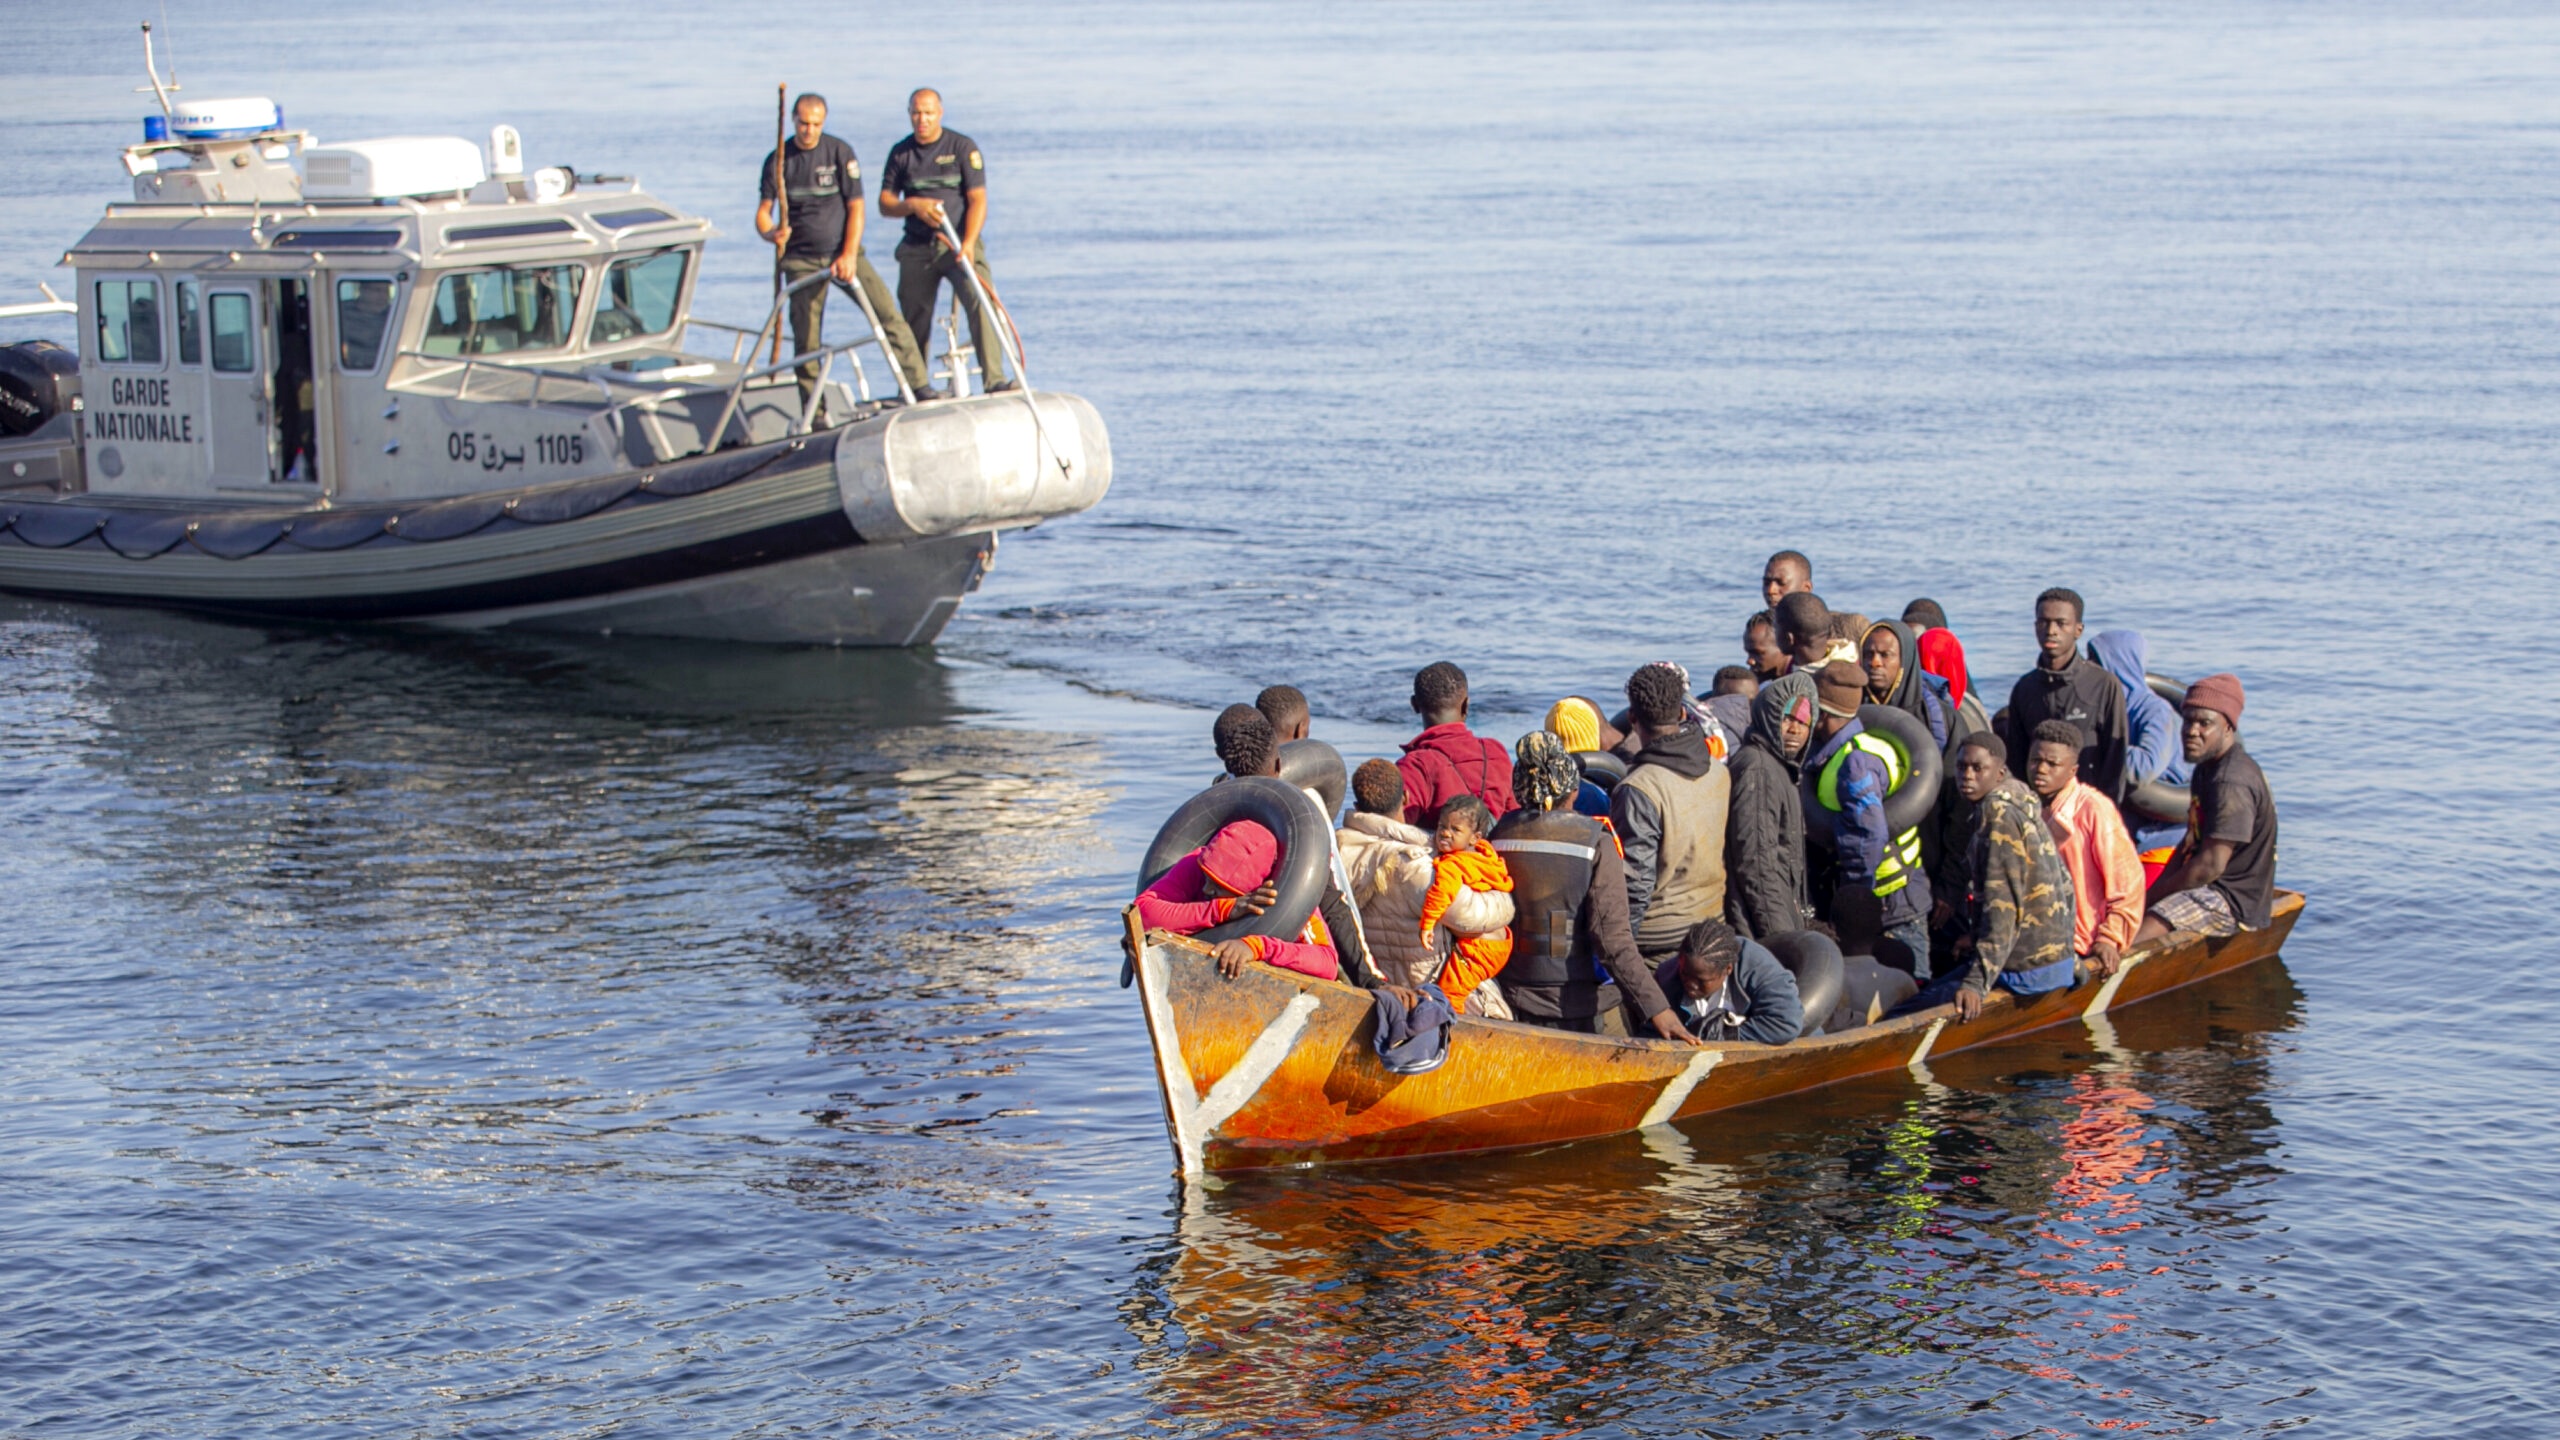 قوارب الهجرة غير الشرعية تنطلق من تونس مستهدفة شواطئ أوروبا